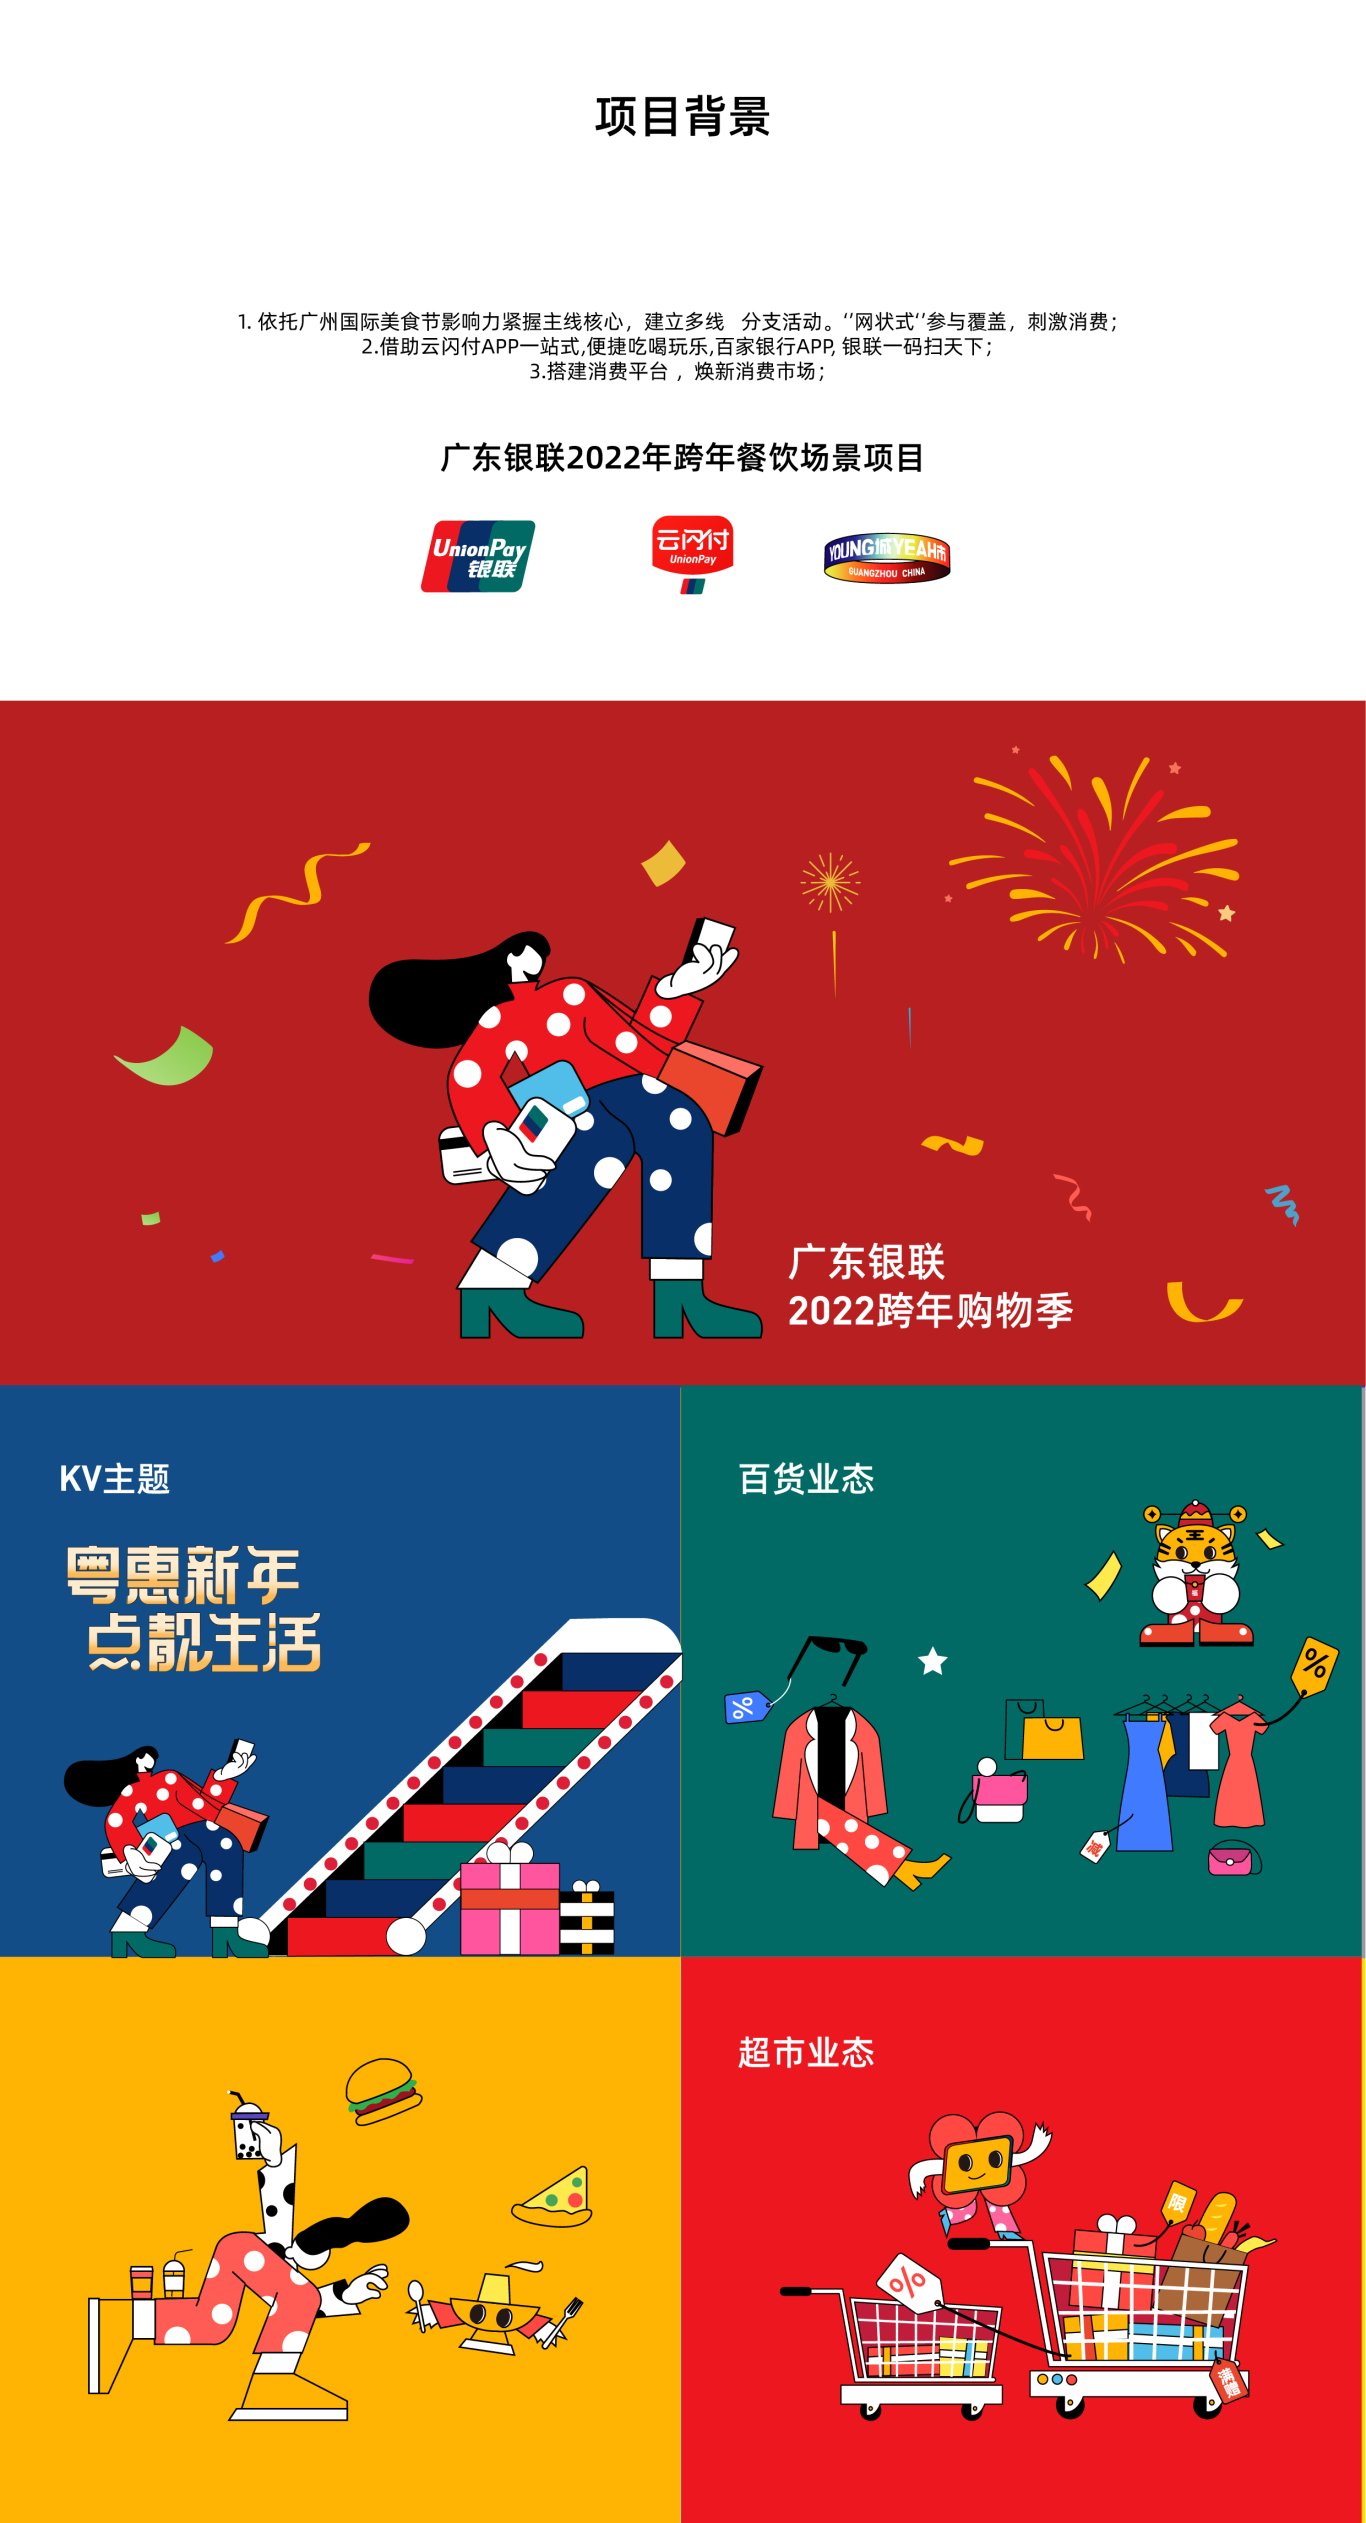 廣東銀聯2022年跨年購物季活動一一粵惠新年，點靚生活圖0